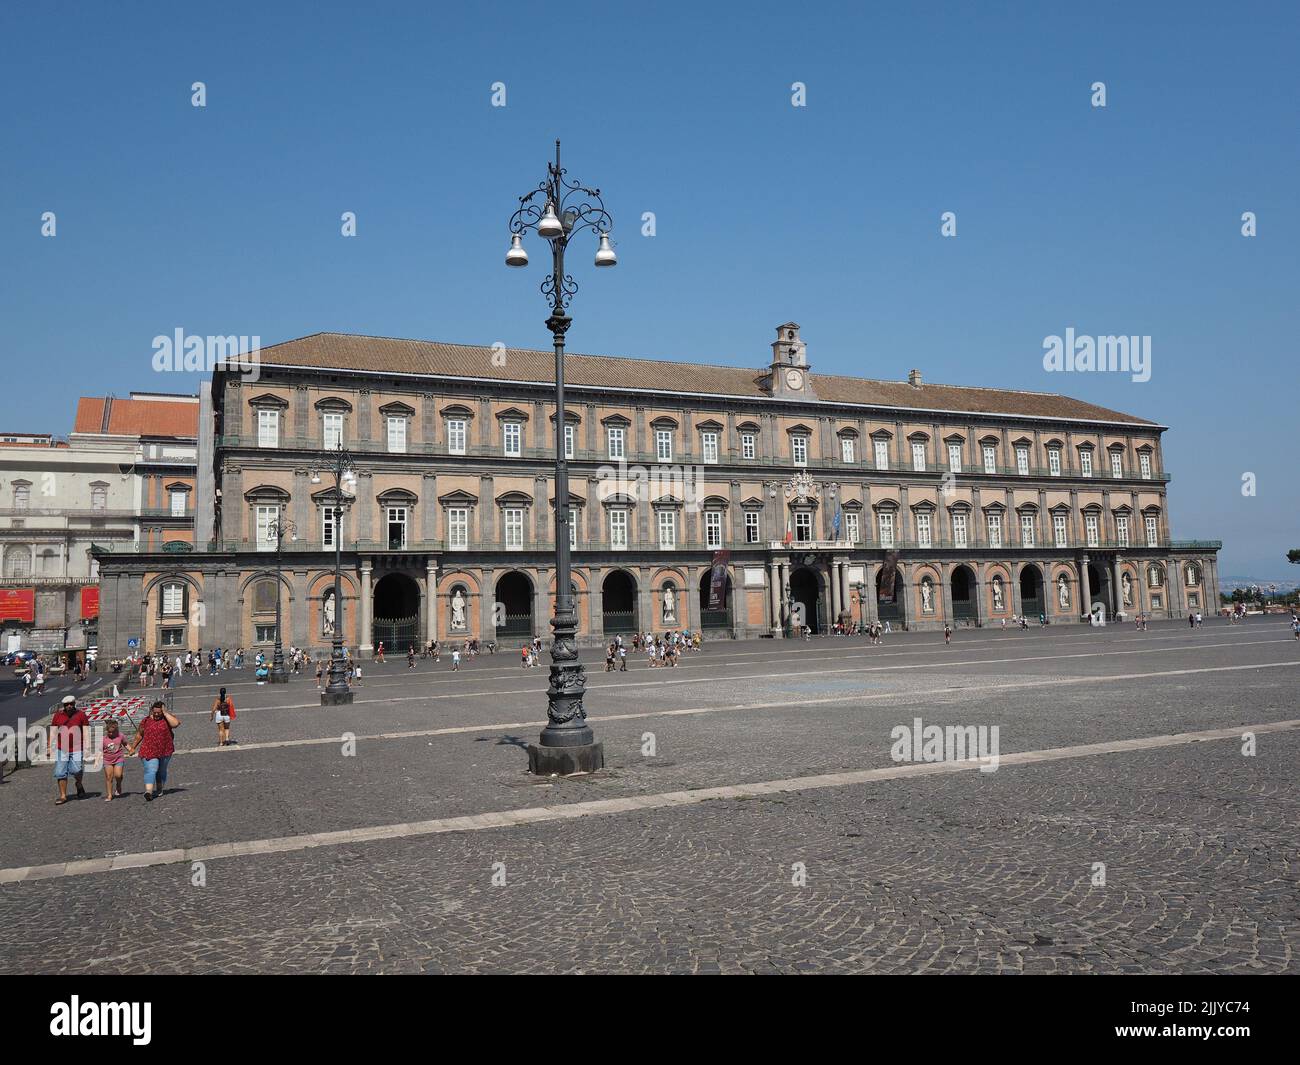 Fachada del Palazzo Reale, o Palacio Real, en el centro de la ciudad de Nápoles, Campania, Italia. La fachada está decorada con grandes estatuas del k Foto de stock